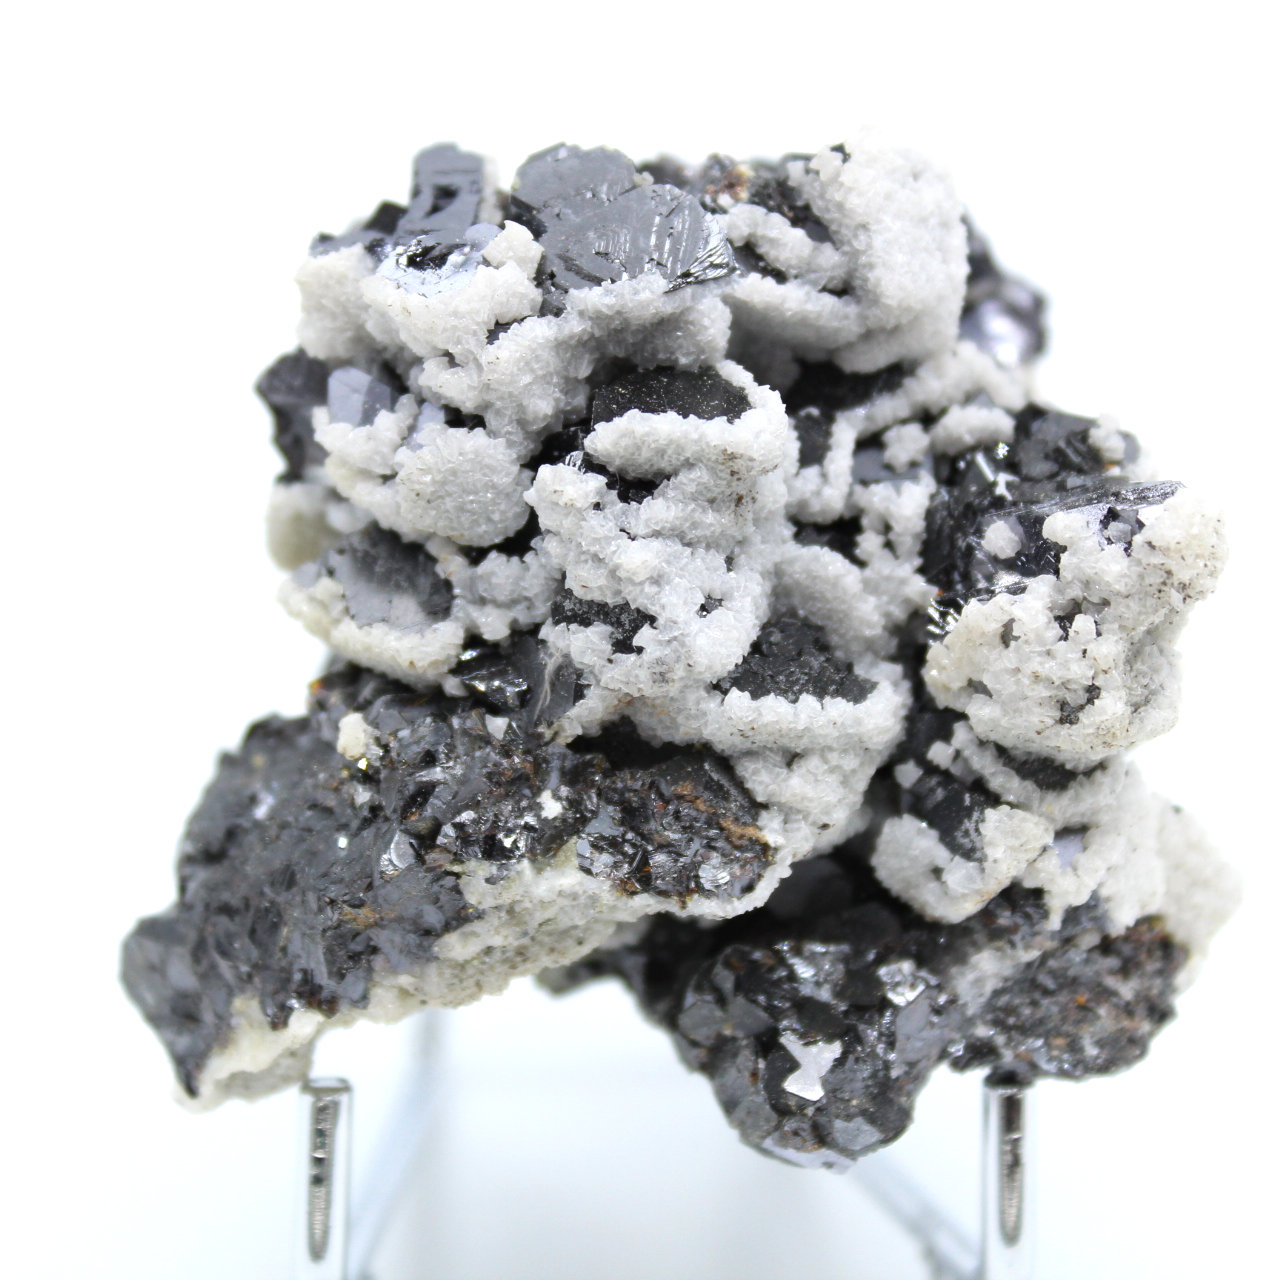 Sphalerite, galena and calcite